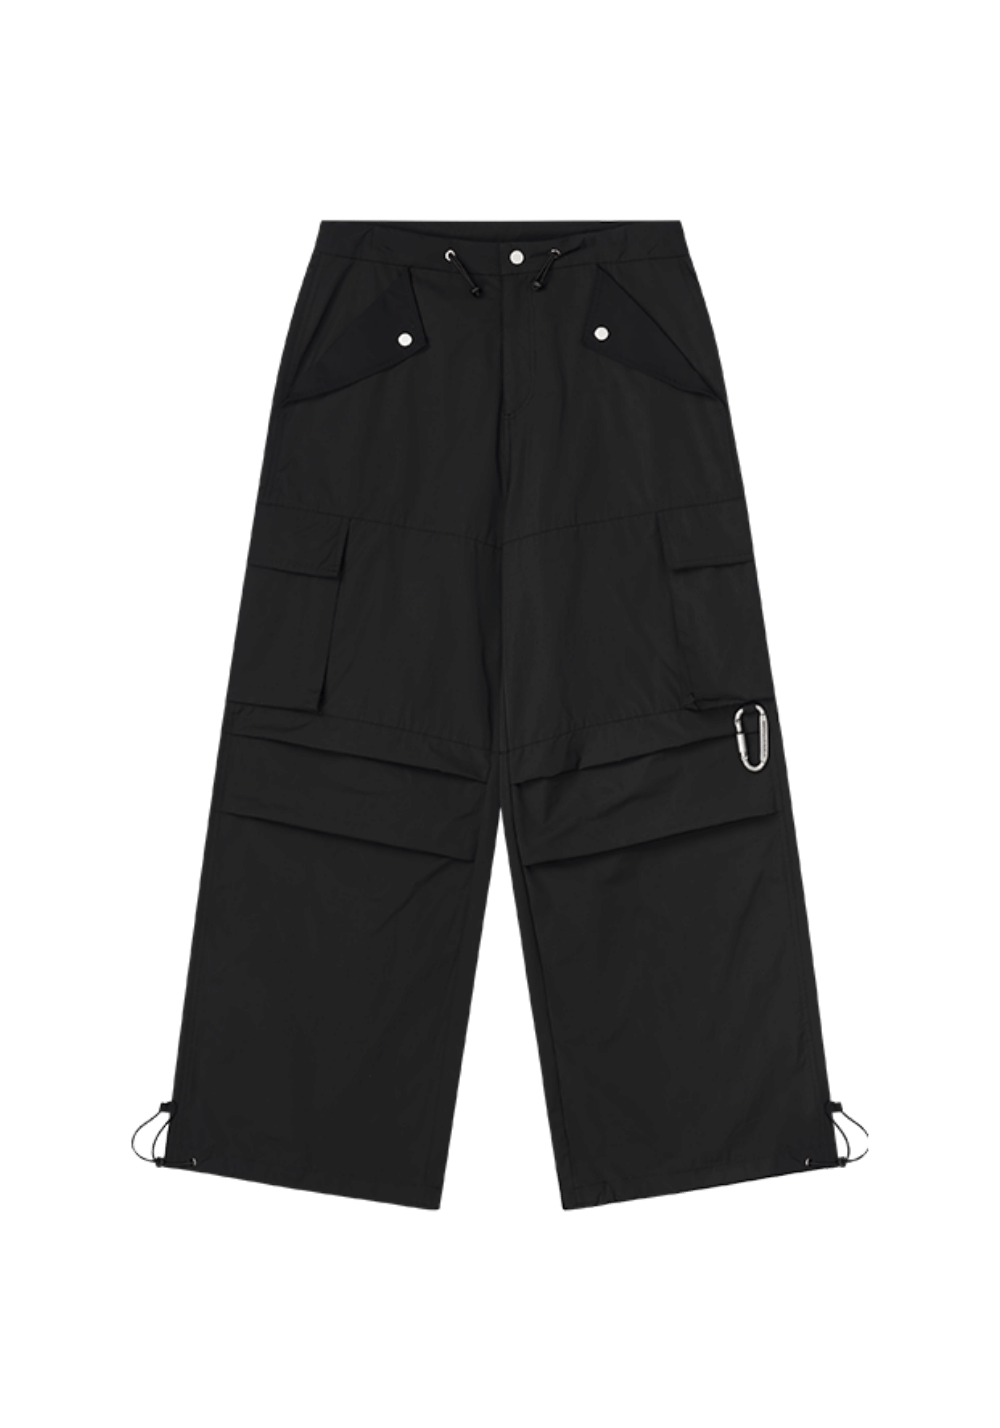 American Street Style Cargo Pants - PSYLOS 1, American Street Style Cargo Pants, Pants, HARSH AND CRUEL, PSYLOS 1